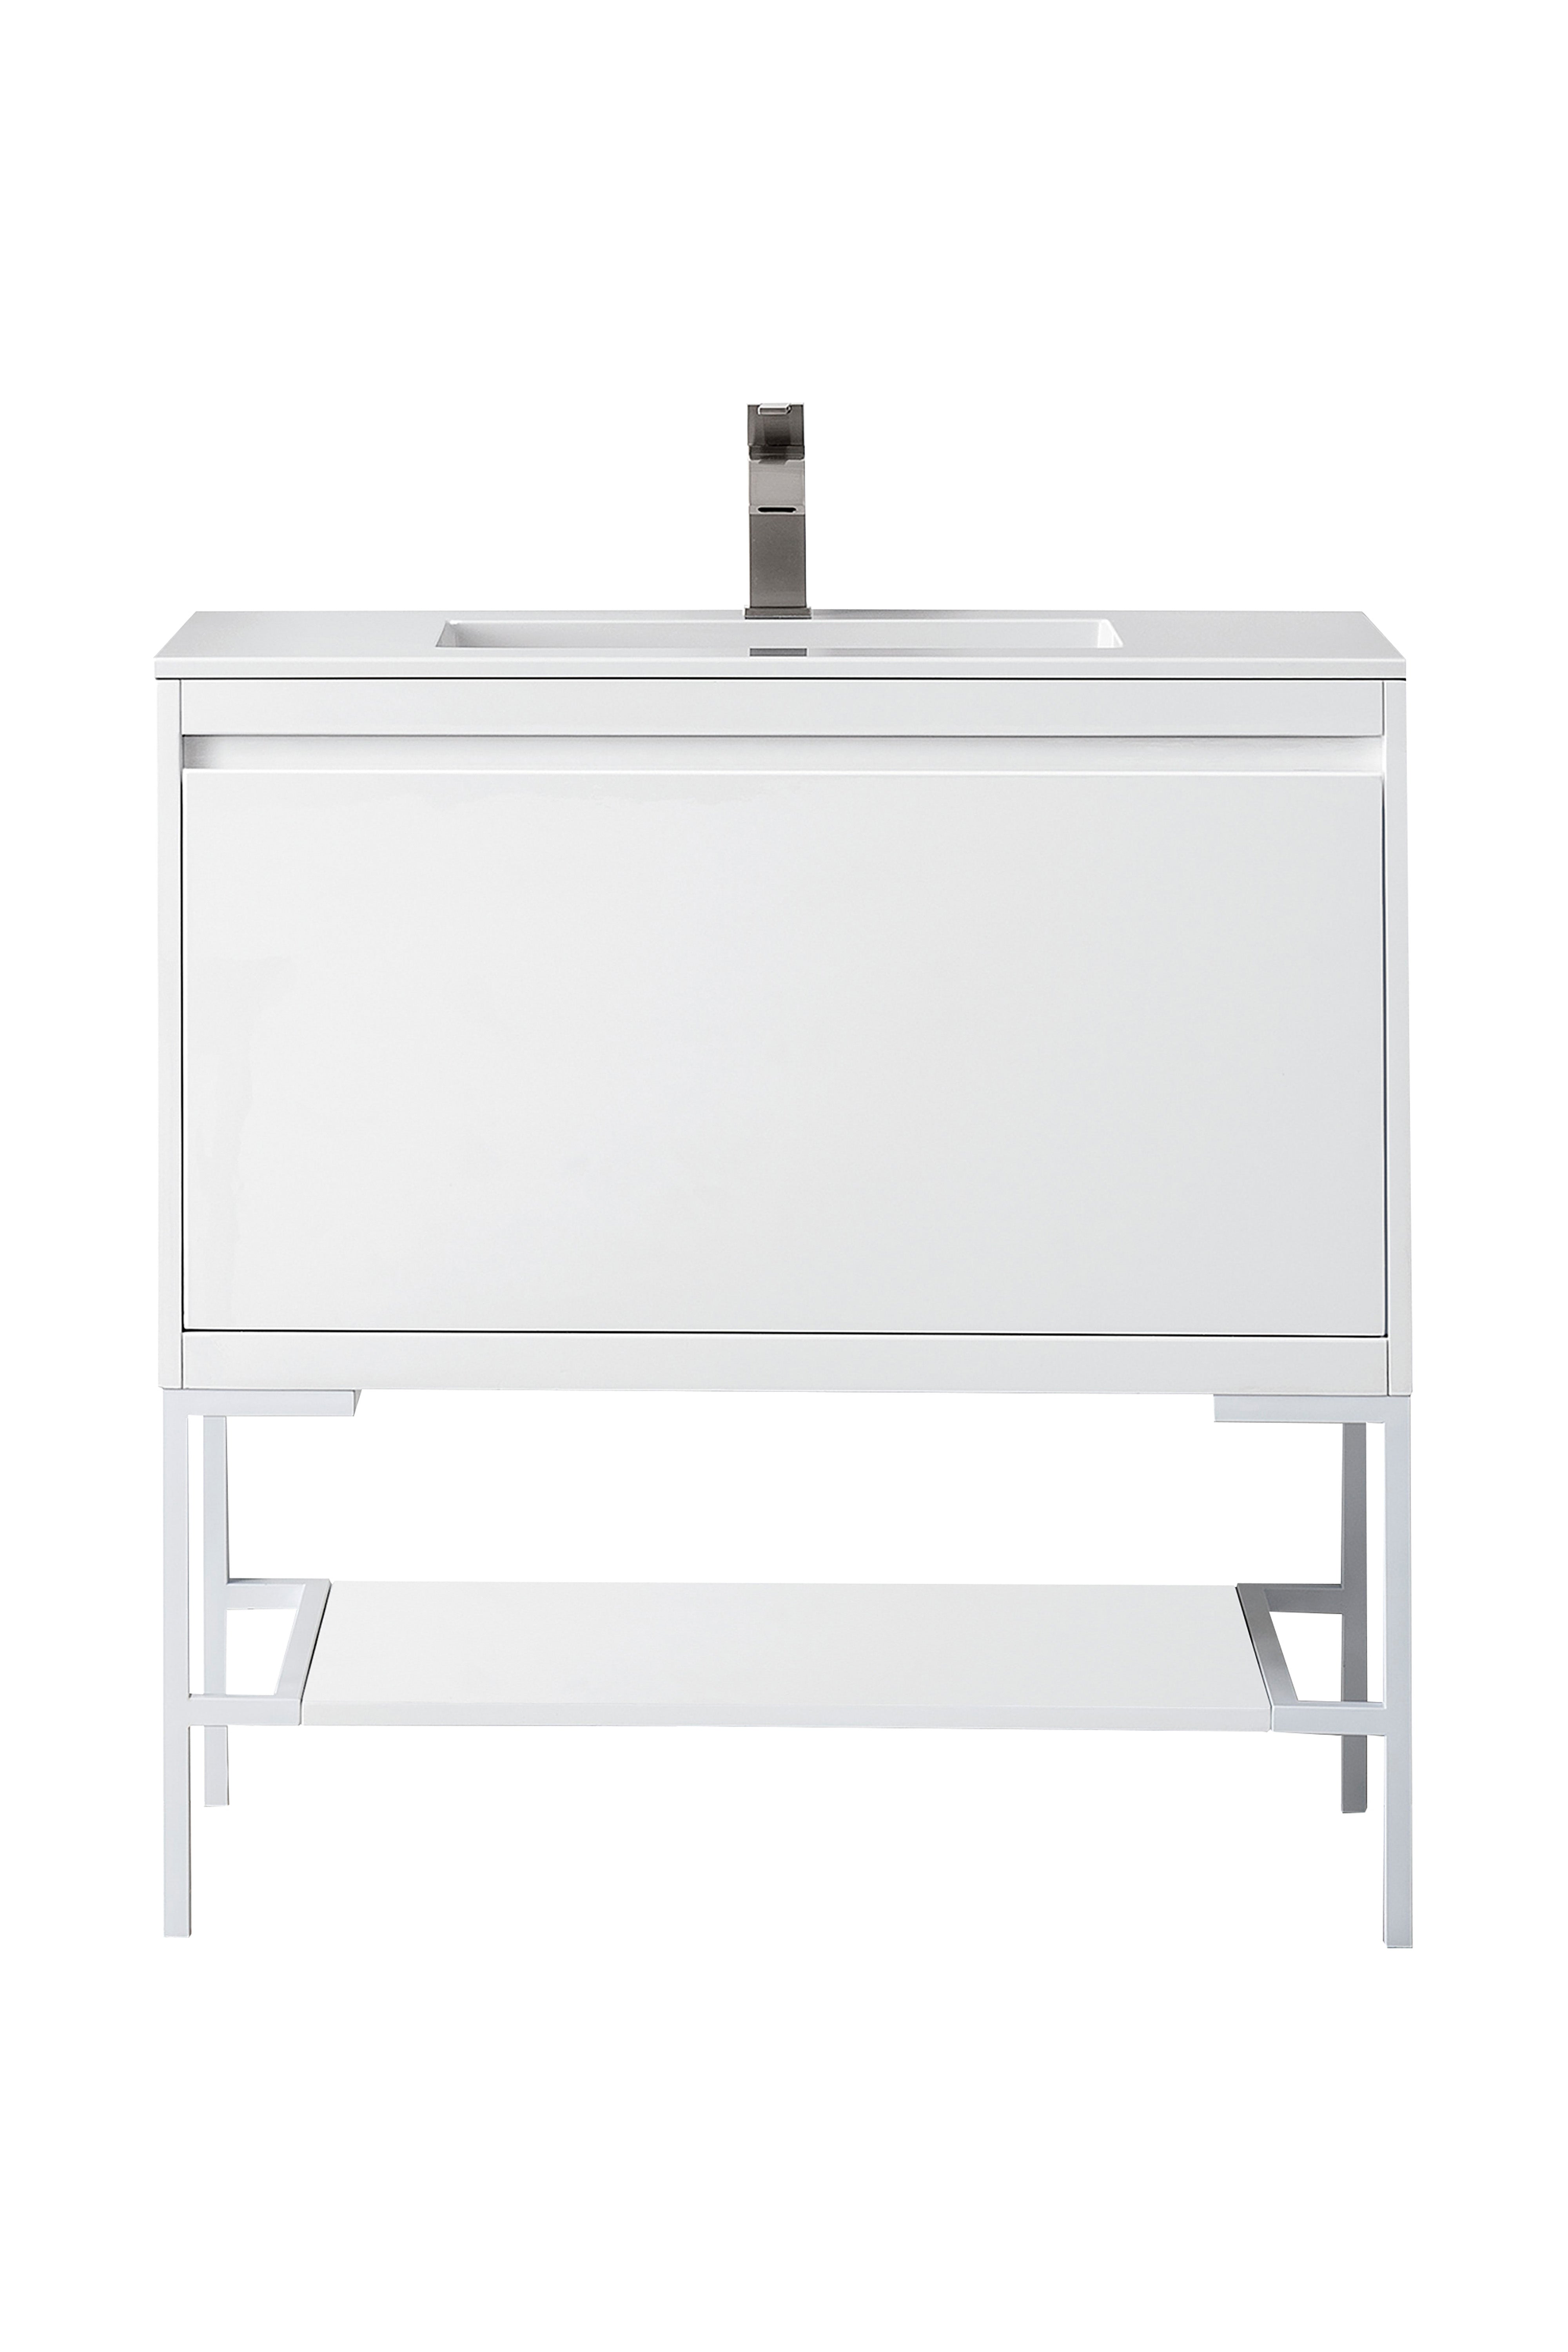 James Martin Vanities Milan 35.4" Single Vanity Cabinet, Glossy White, Glossy White